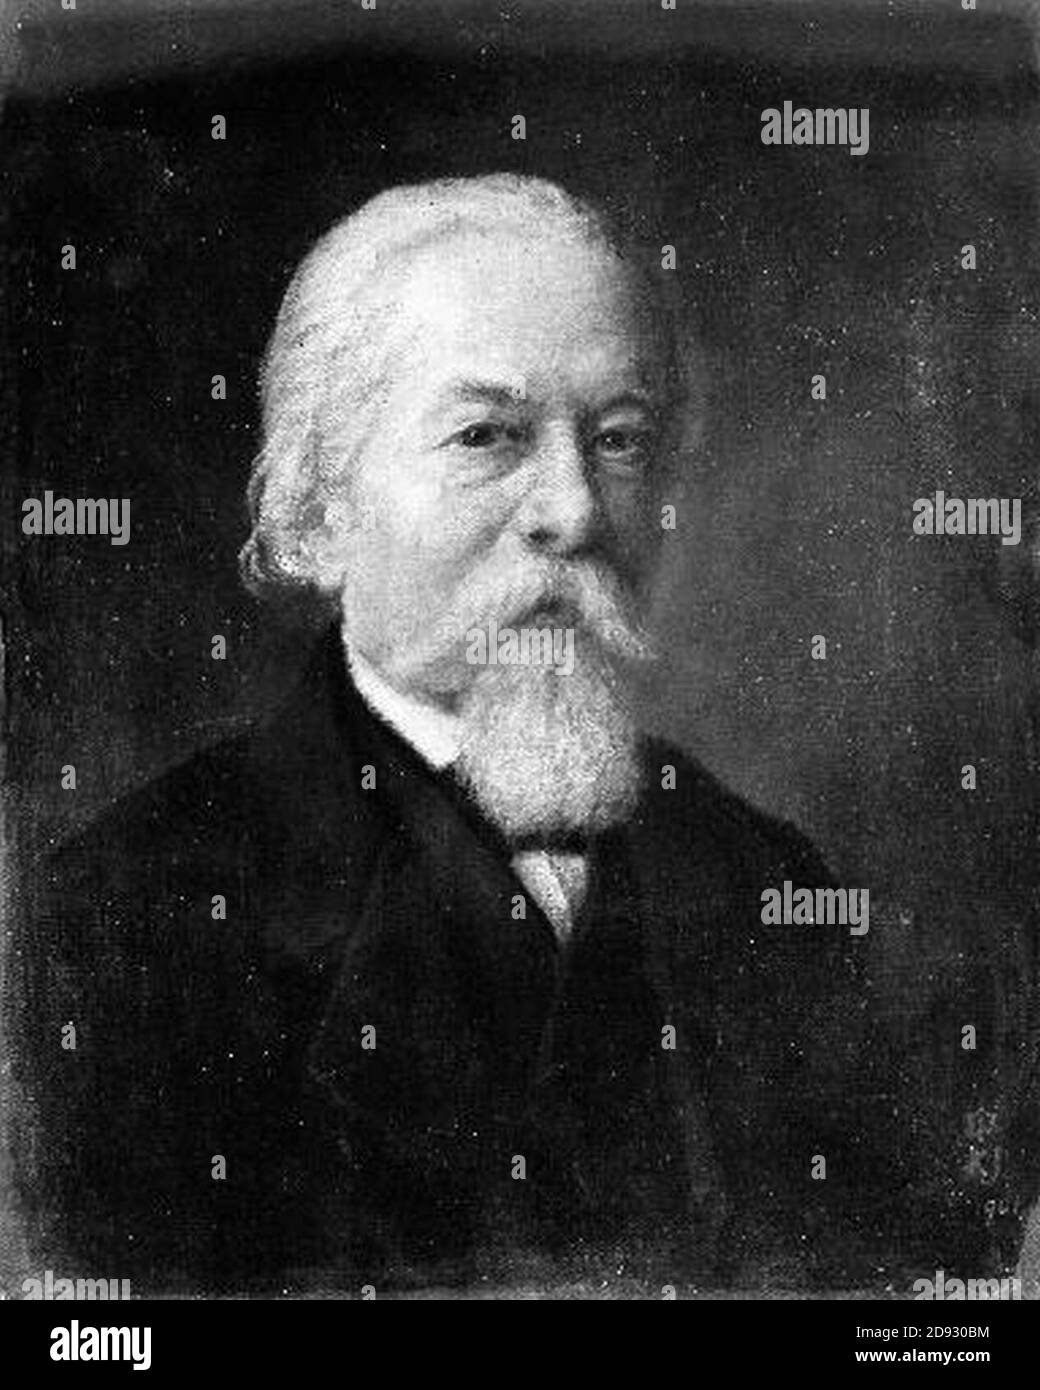 Karel Javurek 30. 7. 1815-24. 3. 1909 - Vlastni podobizna. Stock Photo